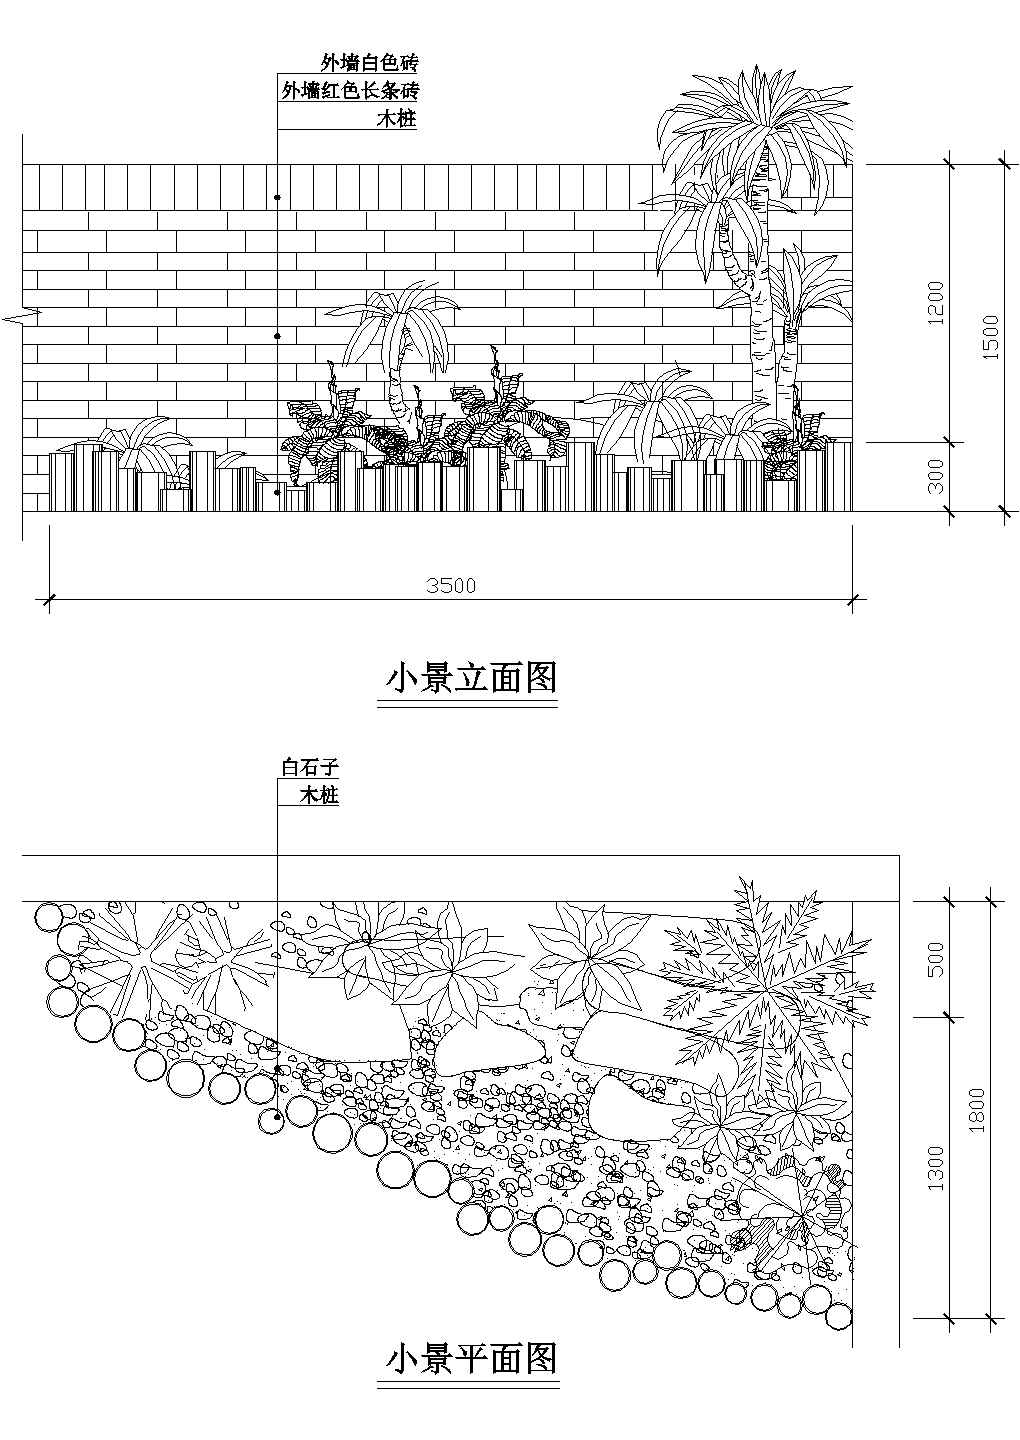 多种室内阳台小景点及庭院小品景观设计CAD平立面方案图